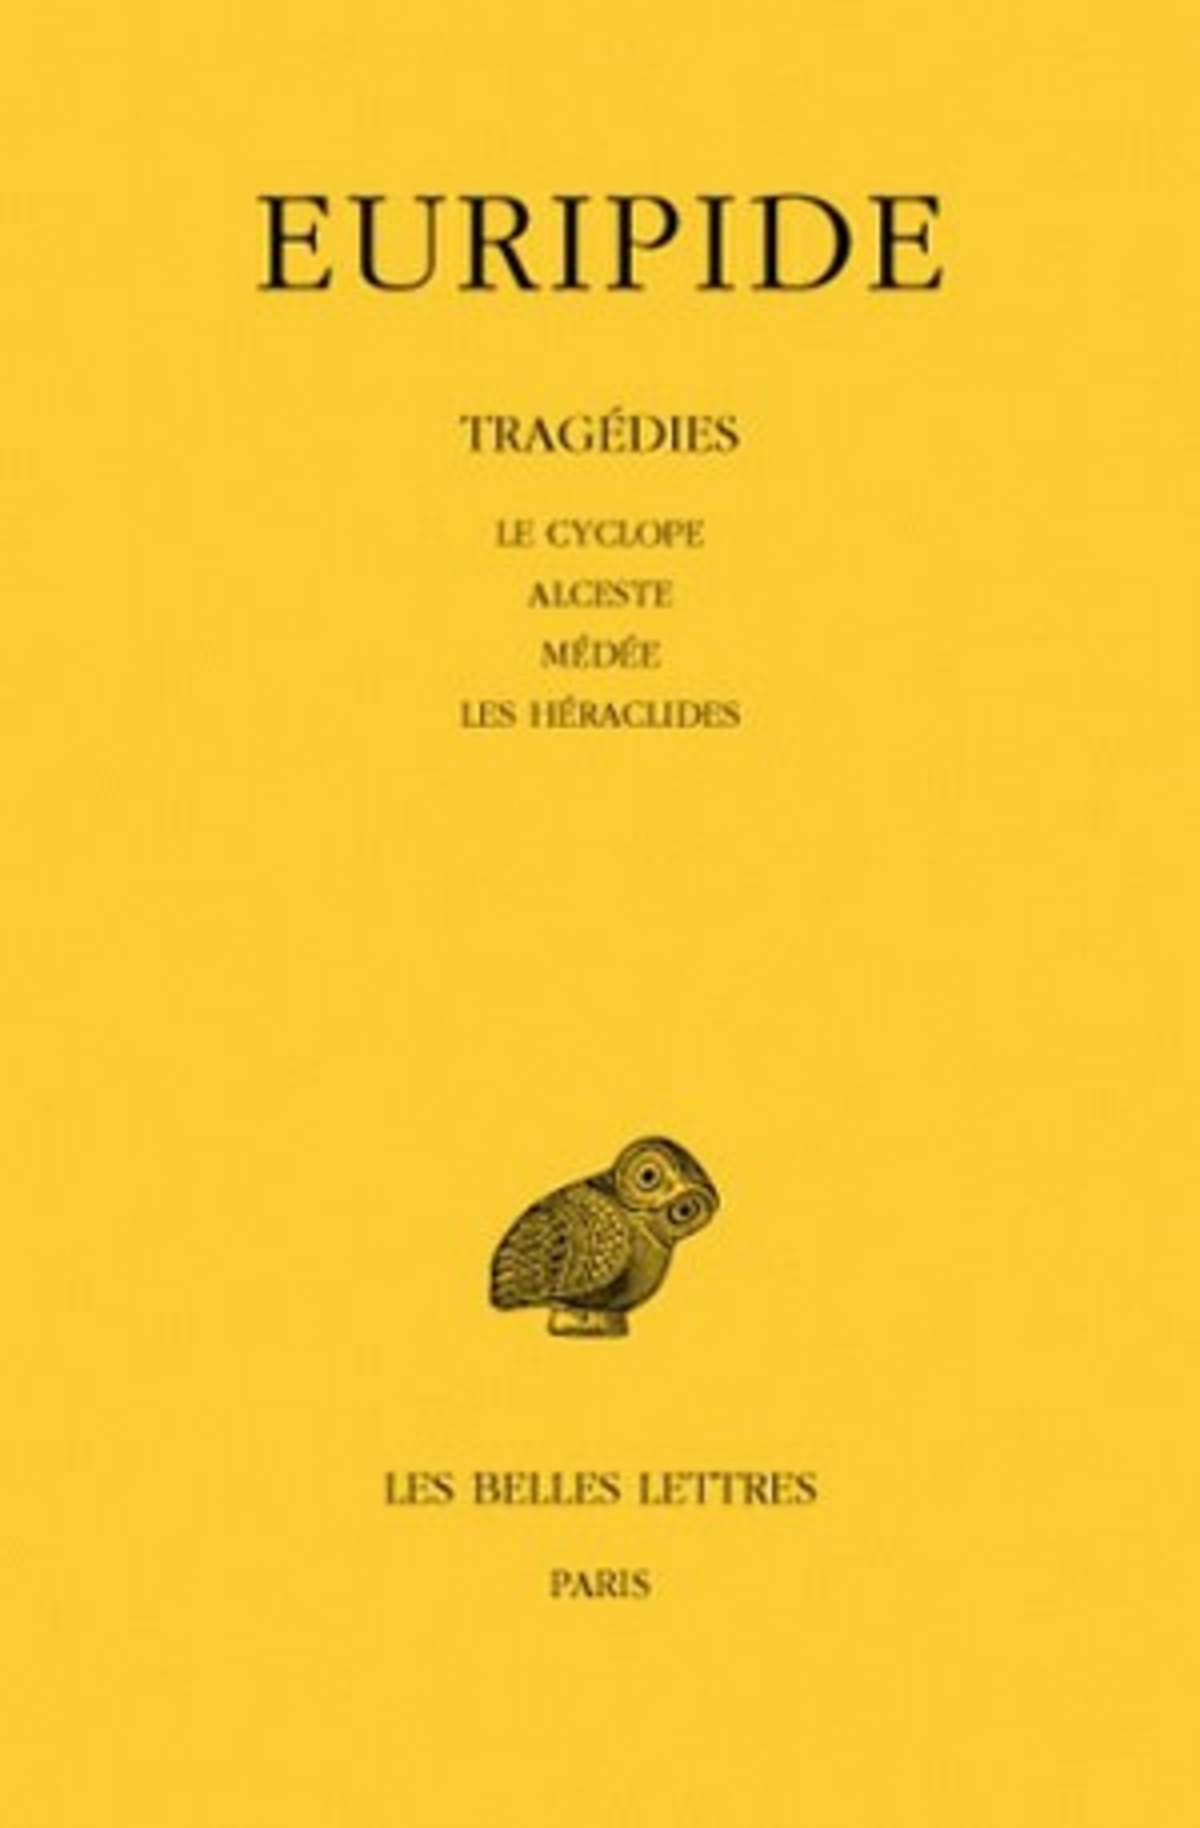 Tragédies. Tome I : Le Cyclope - Alceste - Médée - Les Héraclides